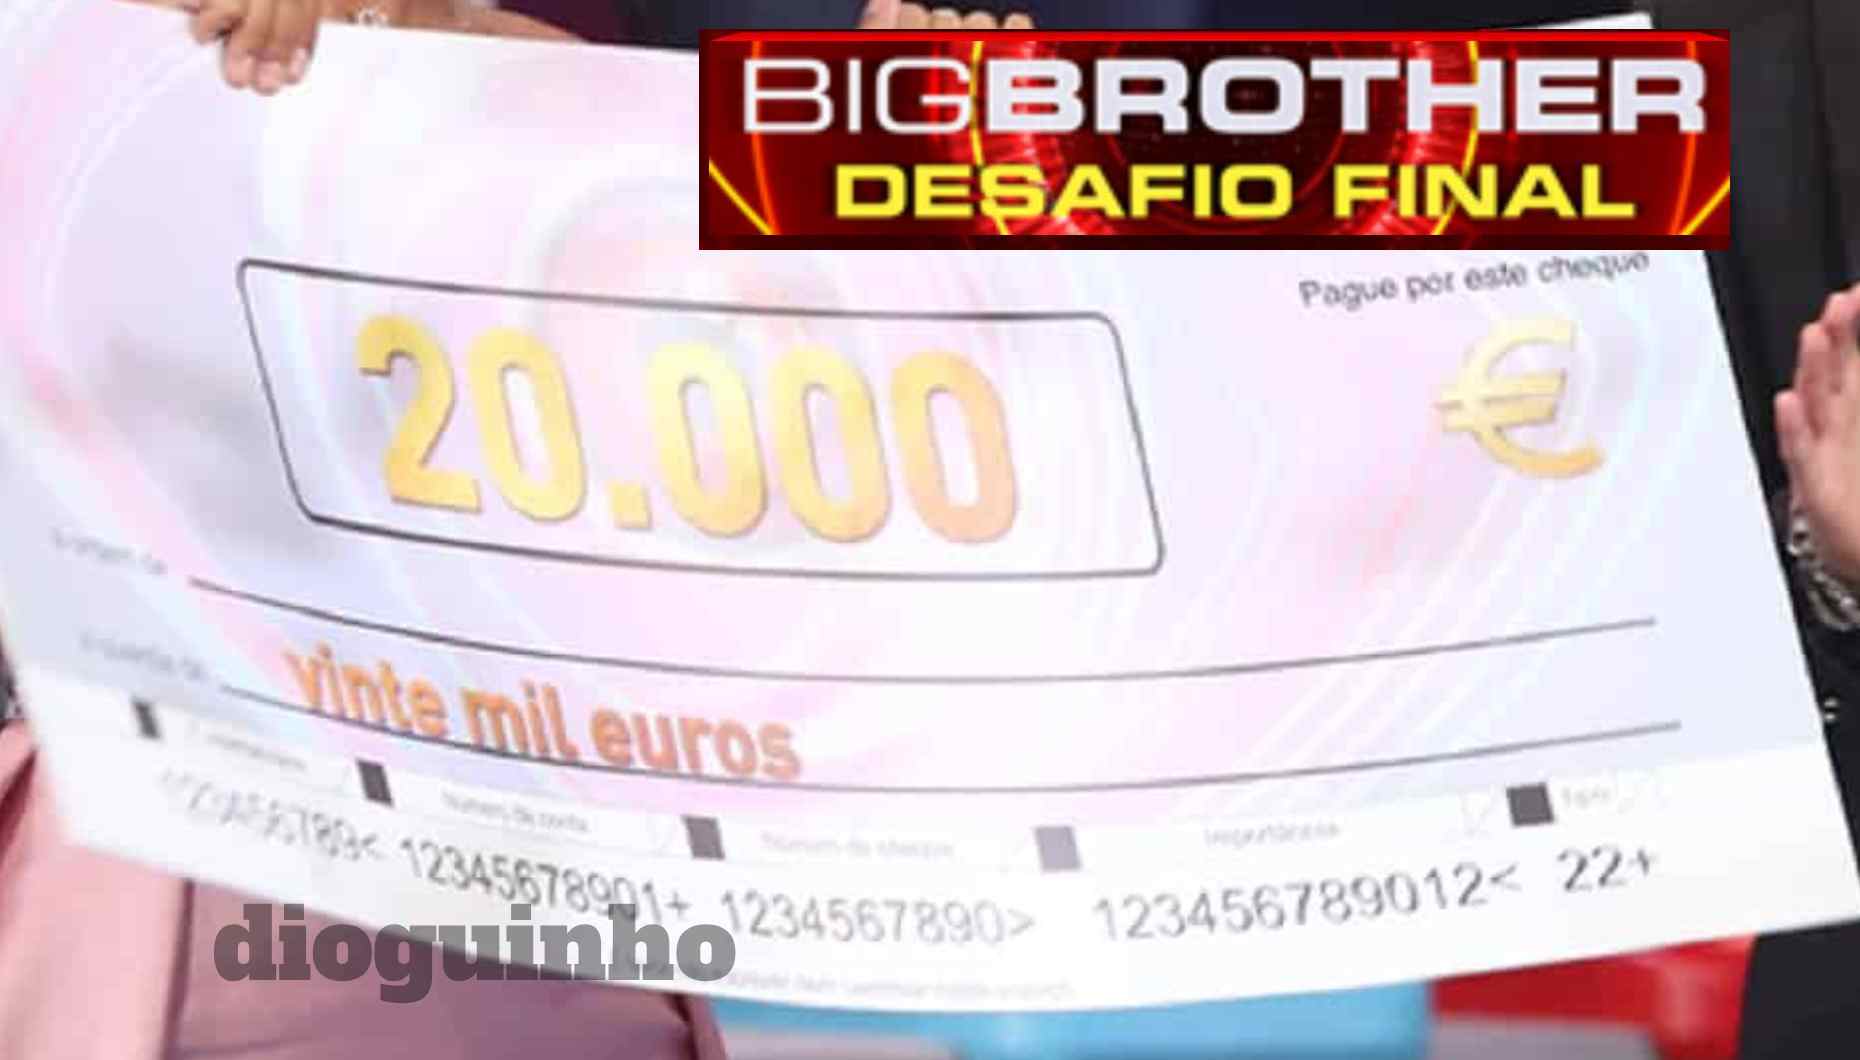 Big Brother - BB: Desafio Final - Mais uns milhares de euros! Valor do prémio do Big Brother – Desafio Final aumentou